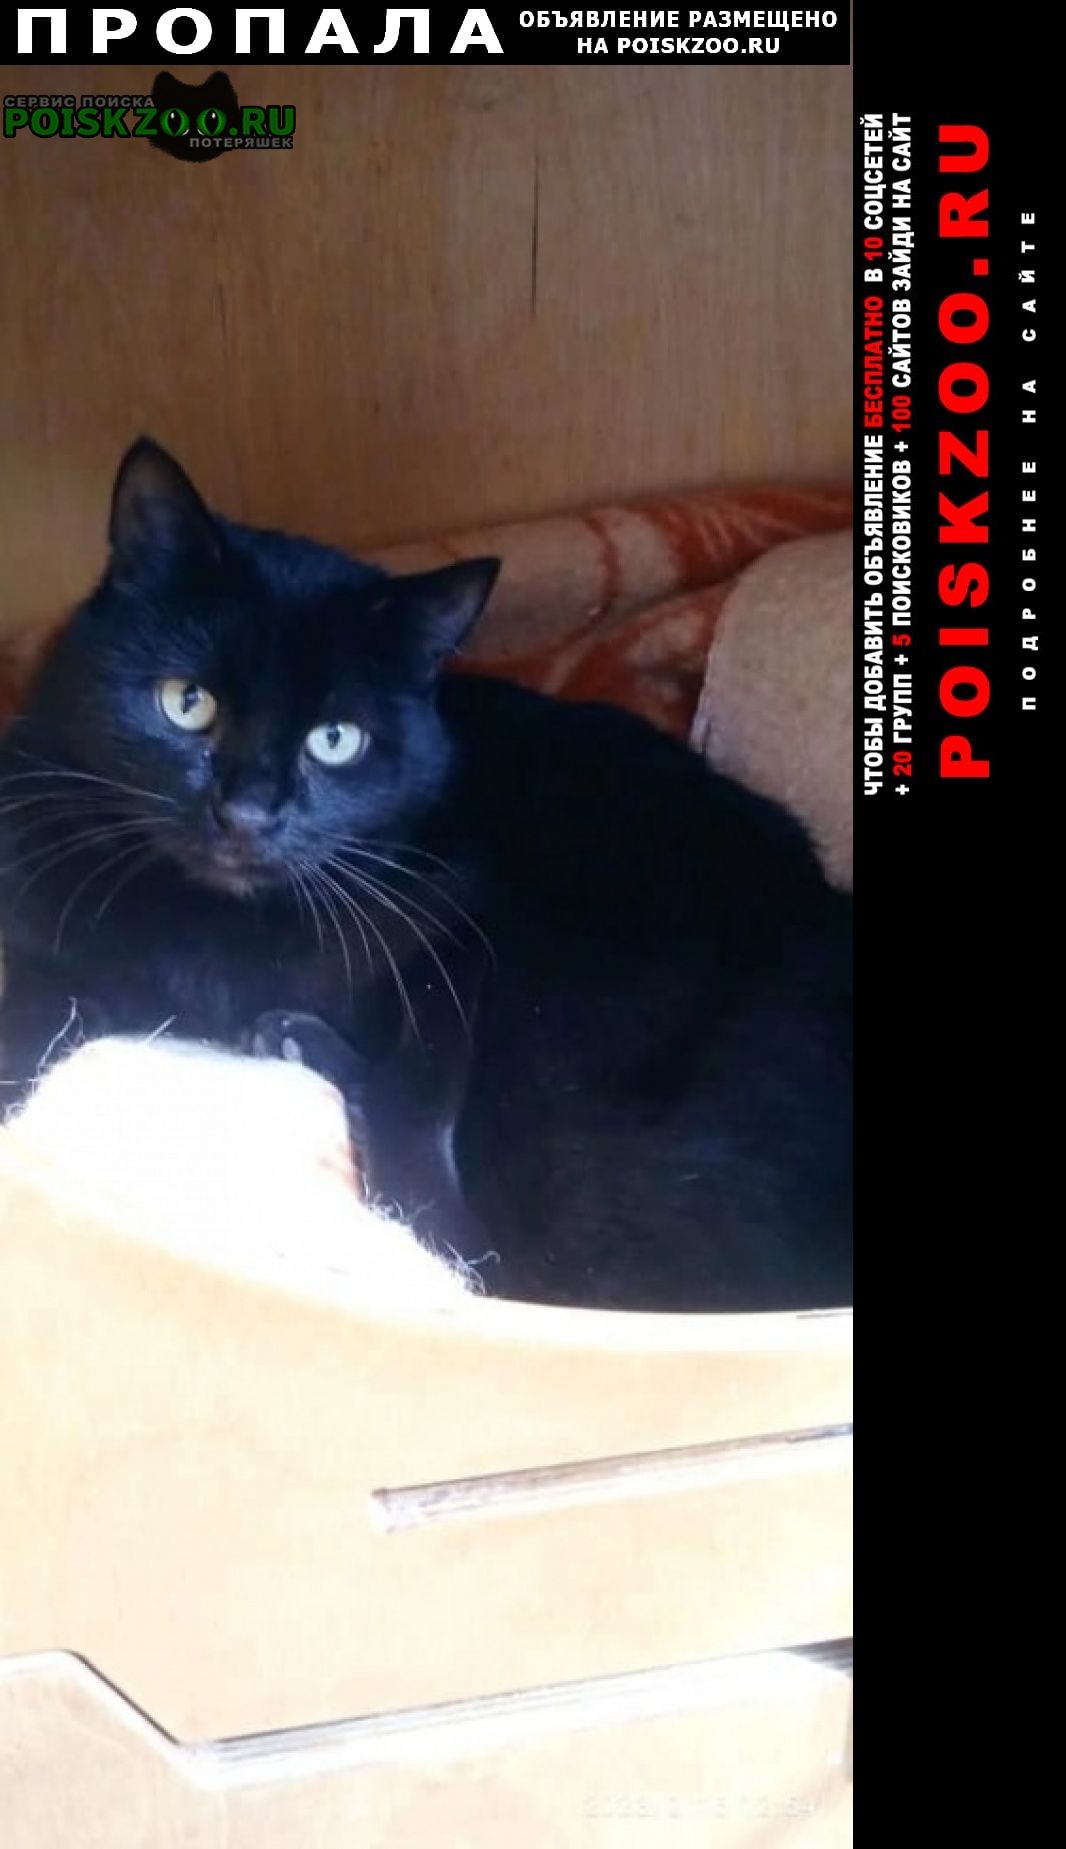 Кисловодск Пропал кот черный кот гладкошерстный